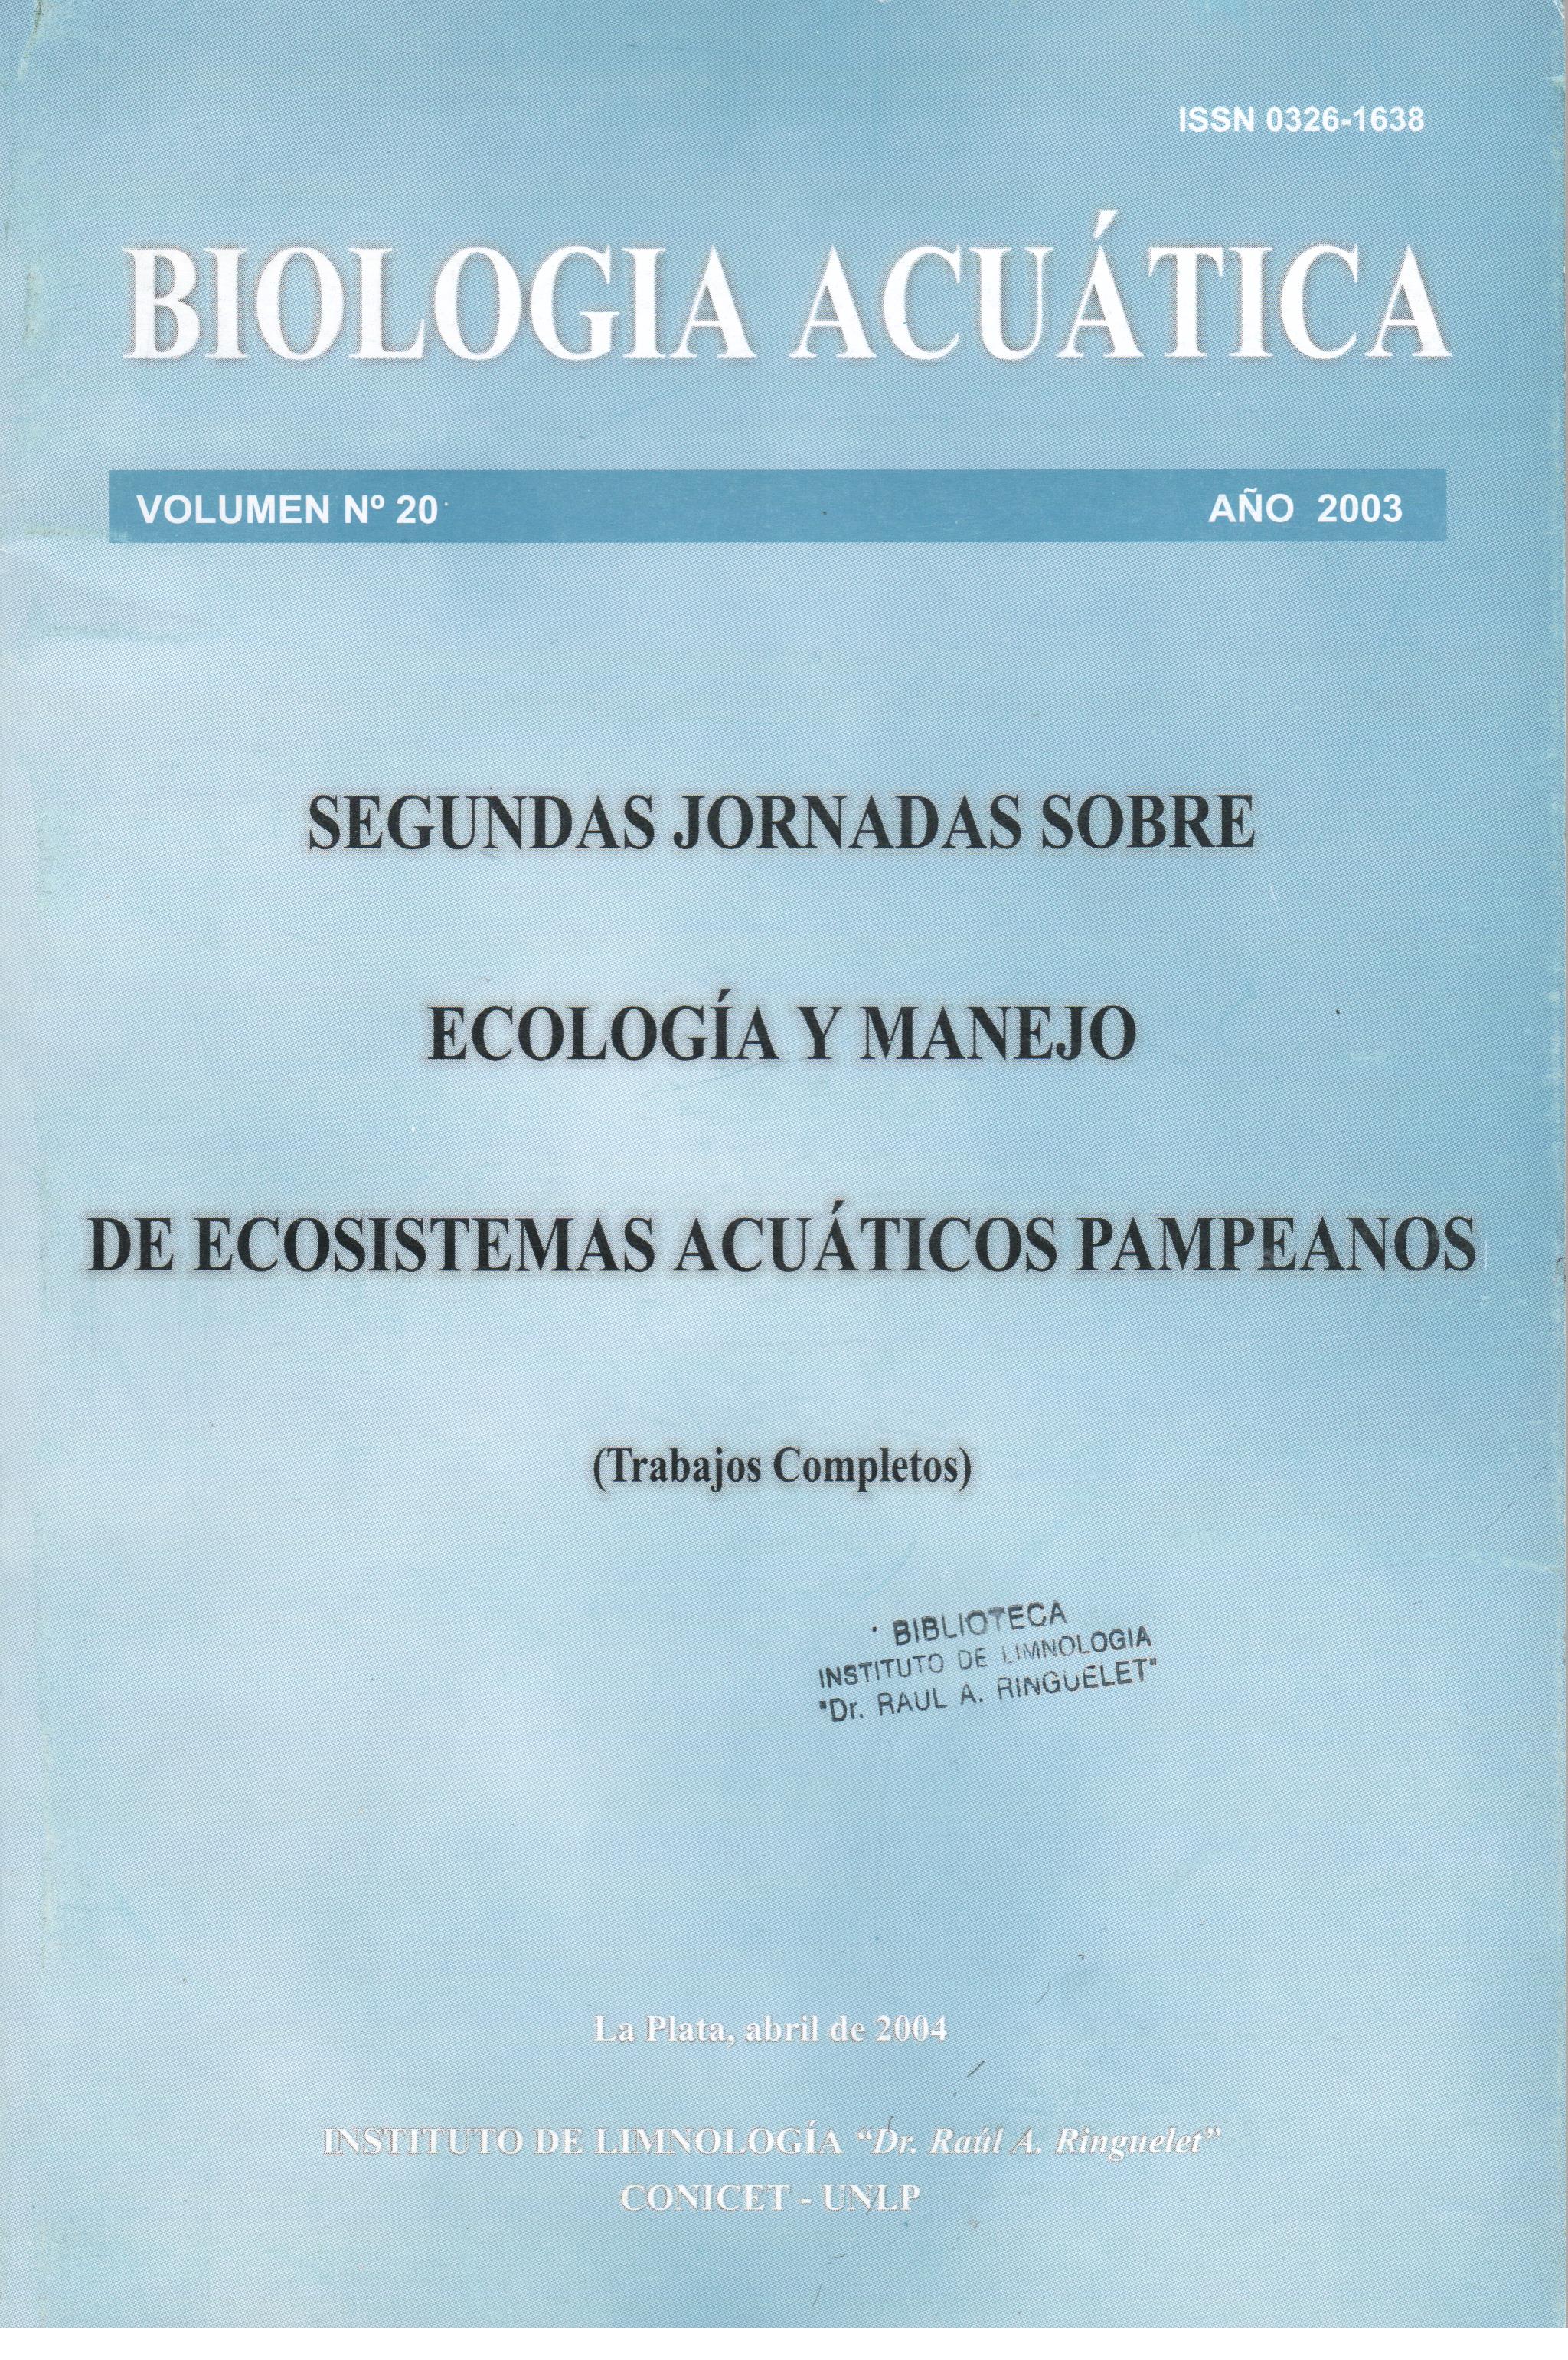 					Ver Núm. 20 (2003): Trabajos completos del II Jornadas sobre Ecología y Manejo de Ecosistemas Acuáticos Pampeanos (EMEAP)
				